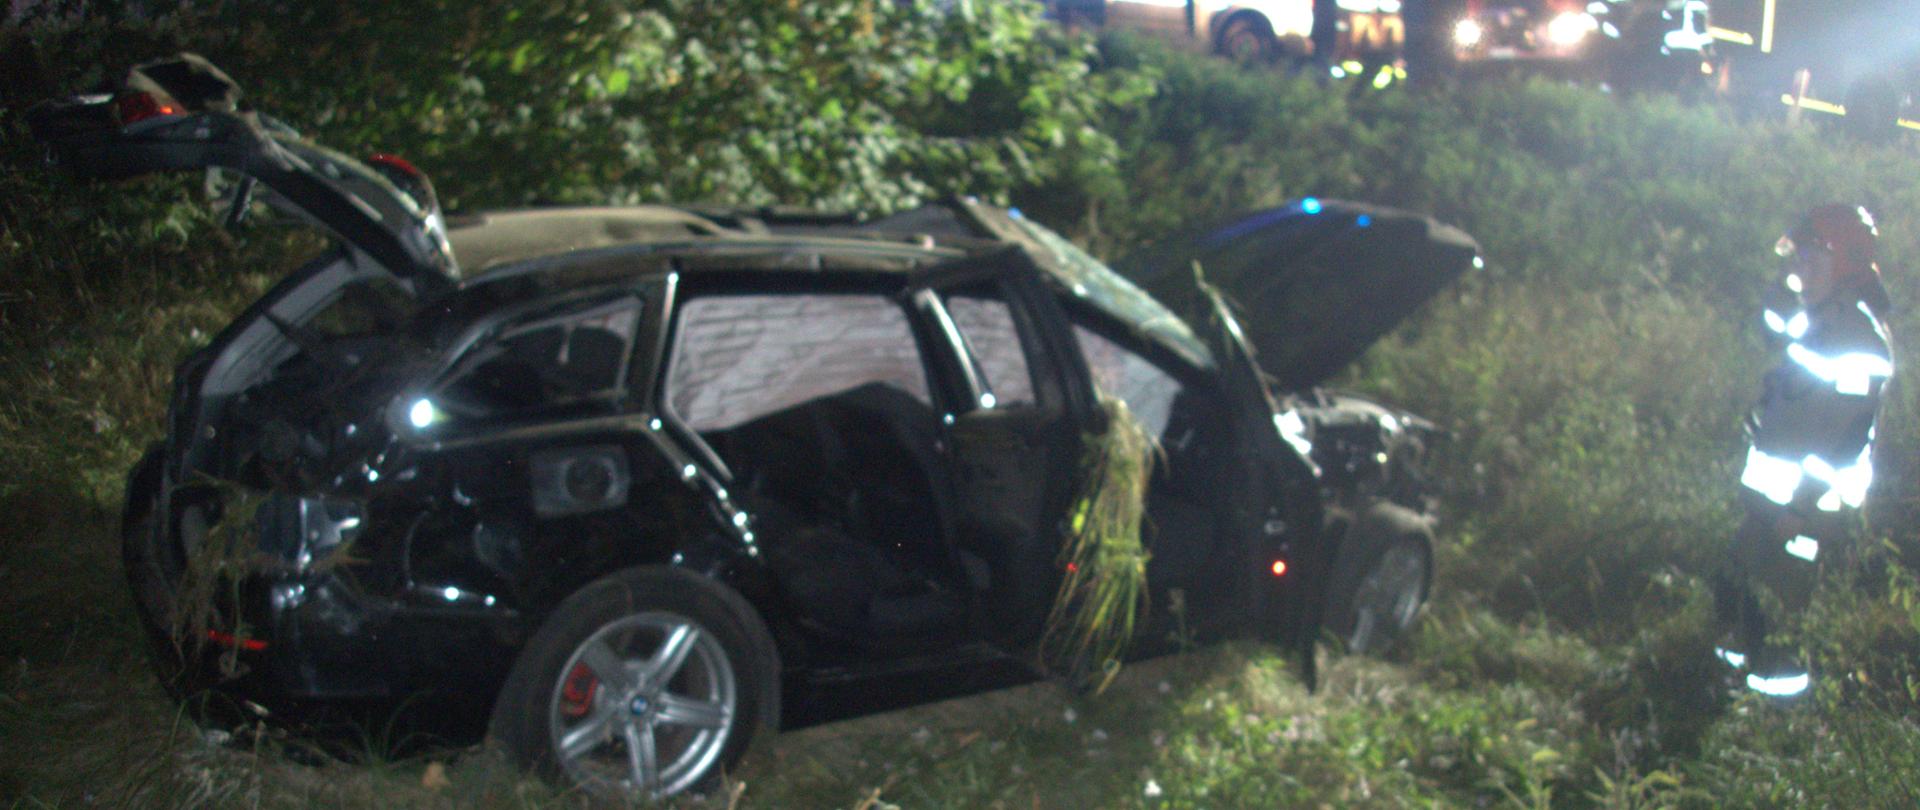 Zdjęcie przedstawia wrak pojazdu po wypadku